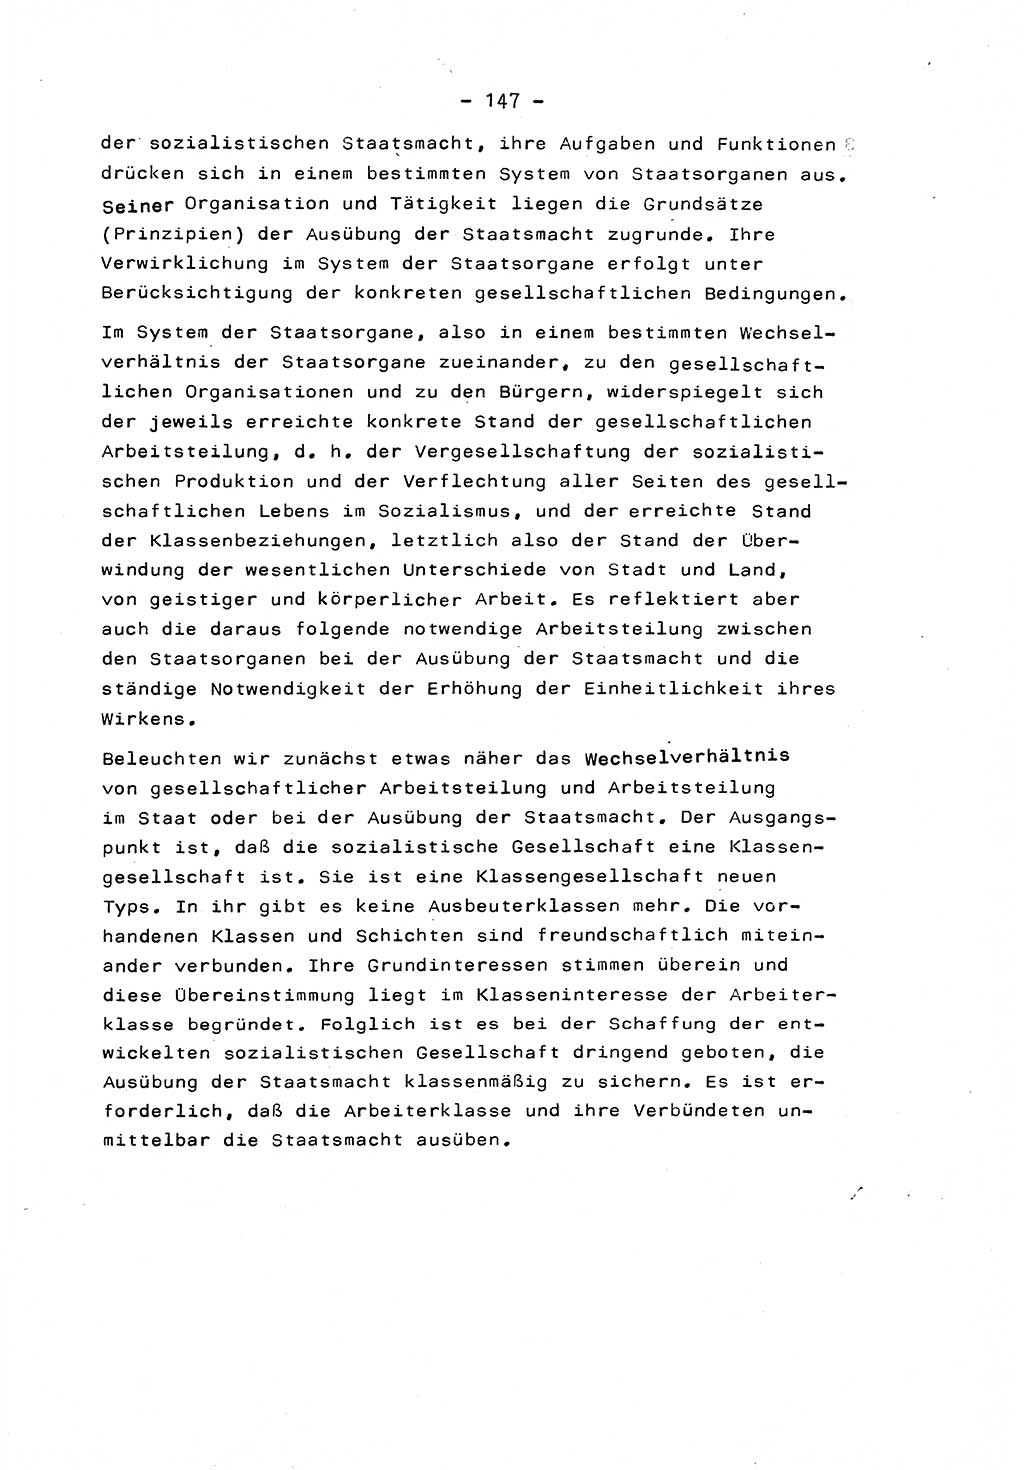 Marxistisch-leninistische Staats- und Rechtstheorie [Deutsche Demokratische Republik (DDR)] 1975, Seite 147 (ML St.-R.-Th. DDR 1975, S. 147)